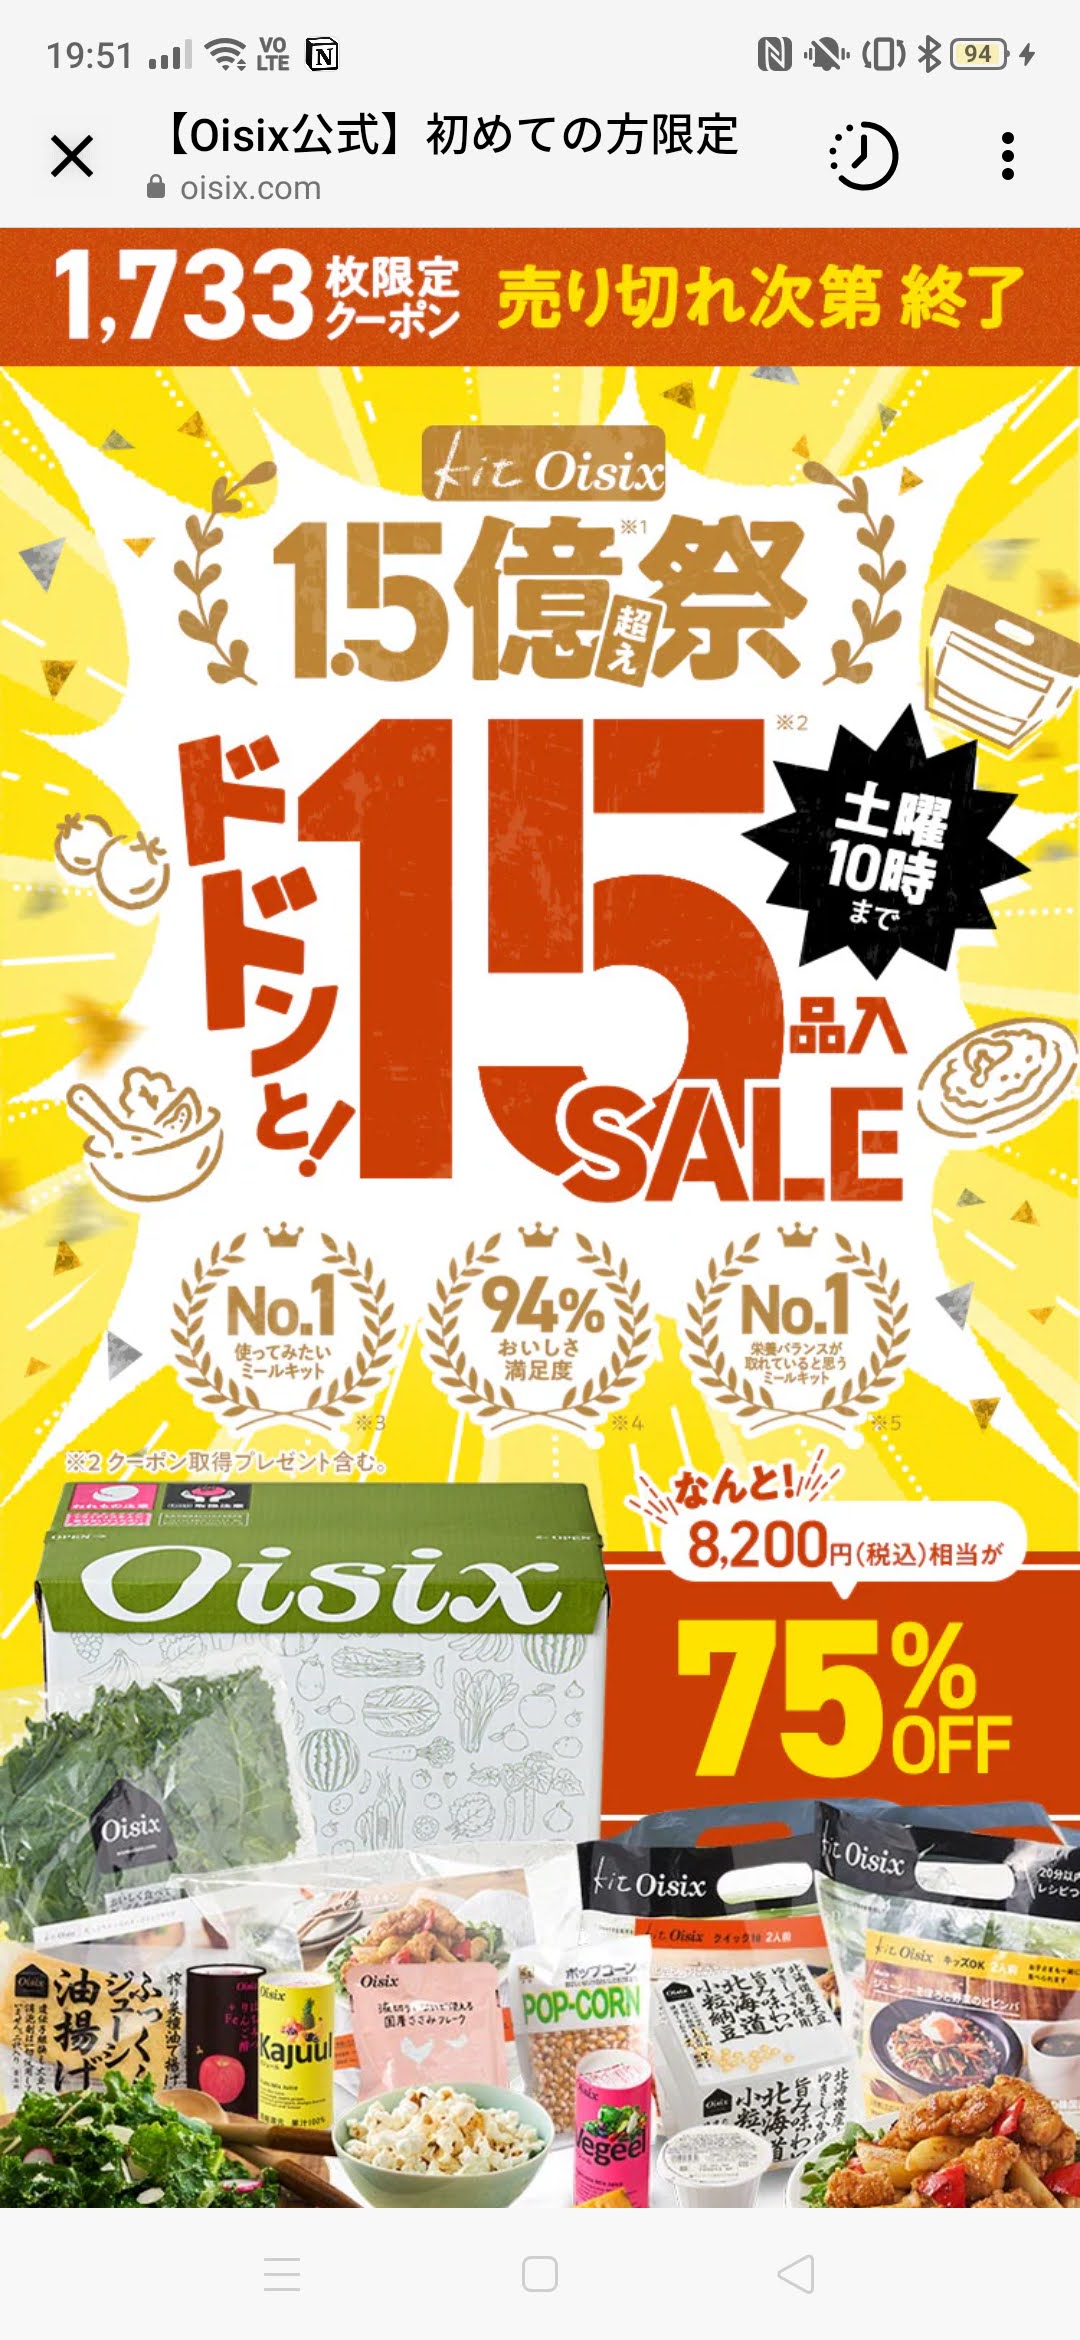 Oisix（オイシックス）おためしセット1980円を買ってみました